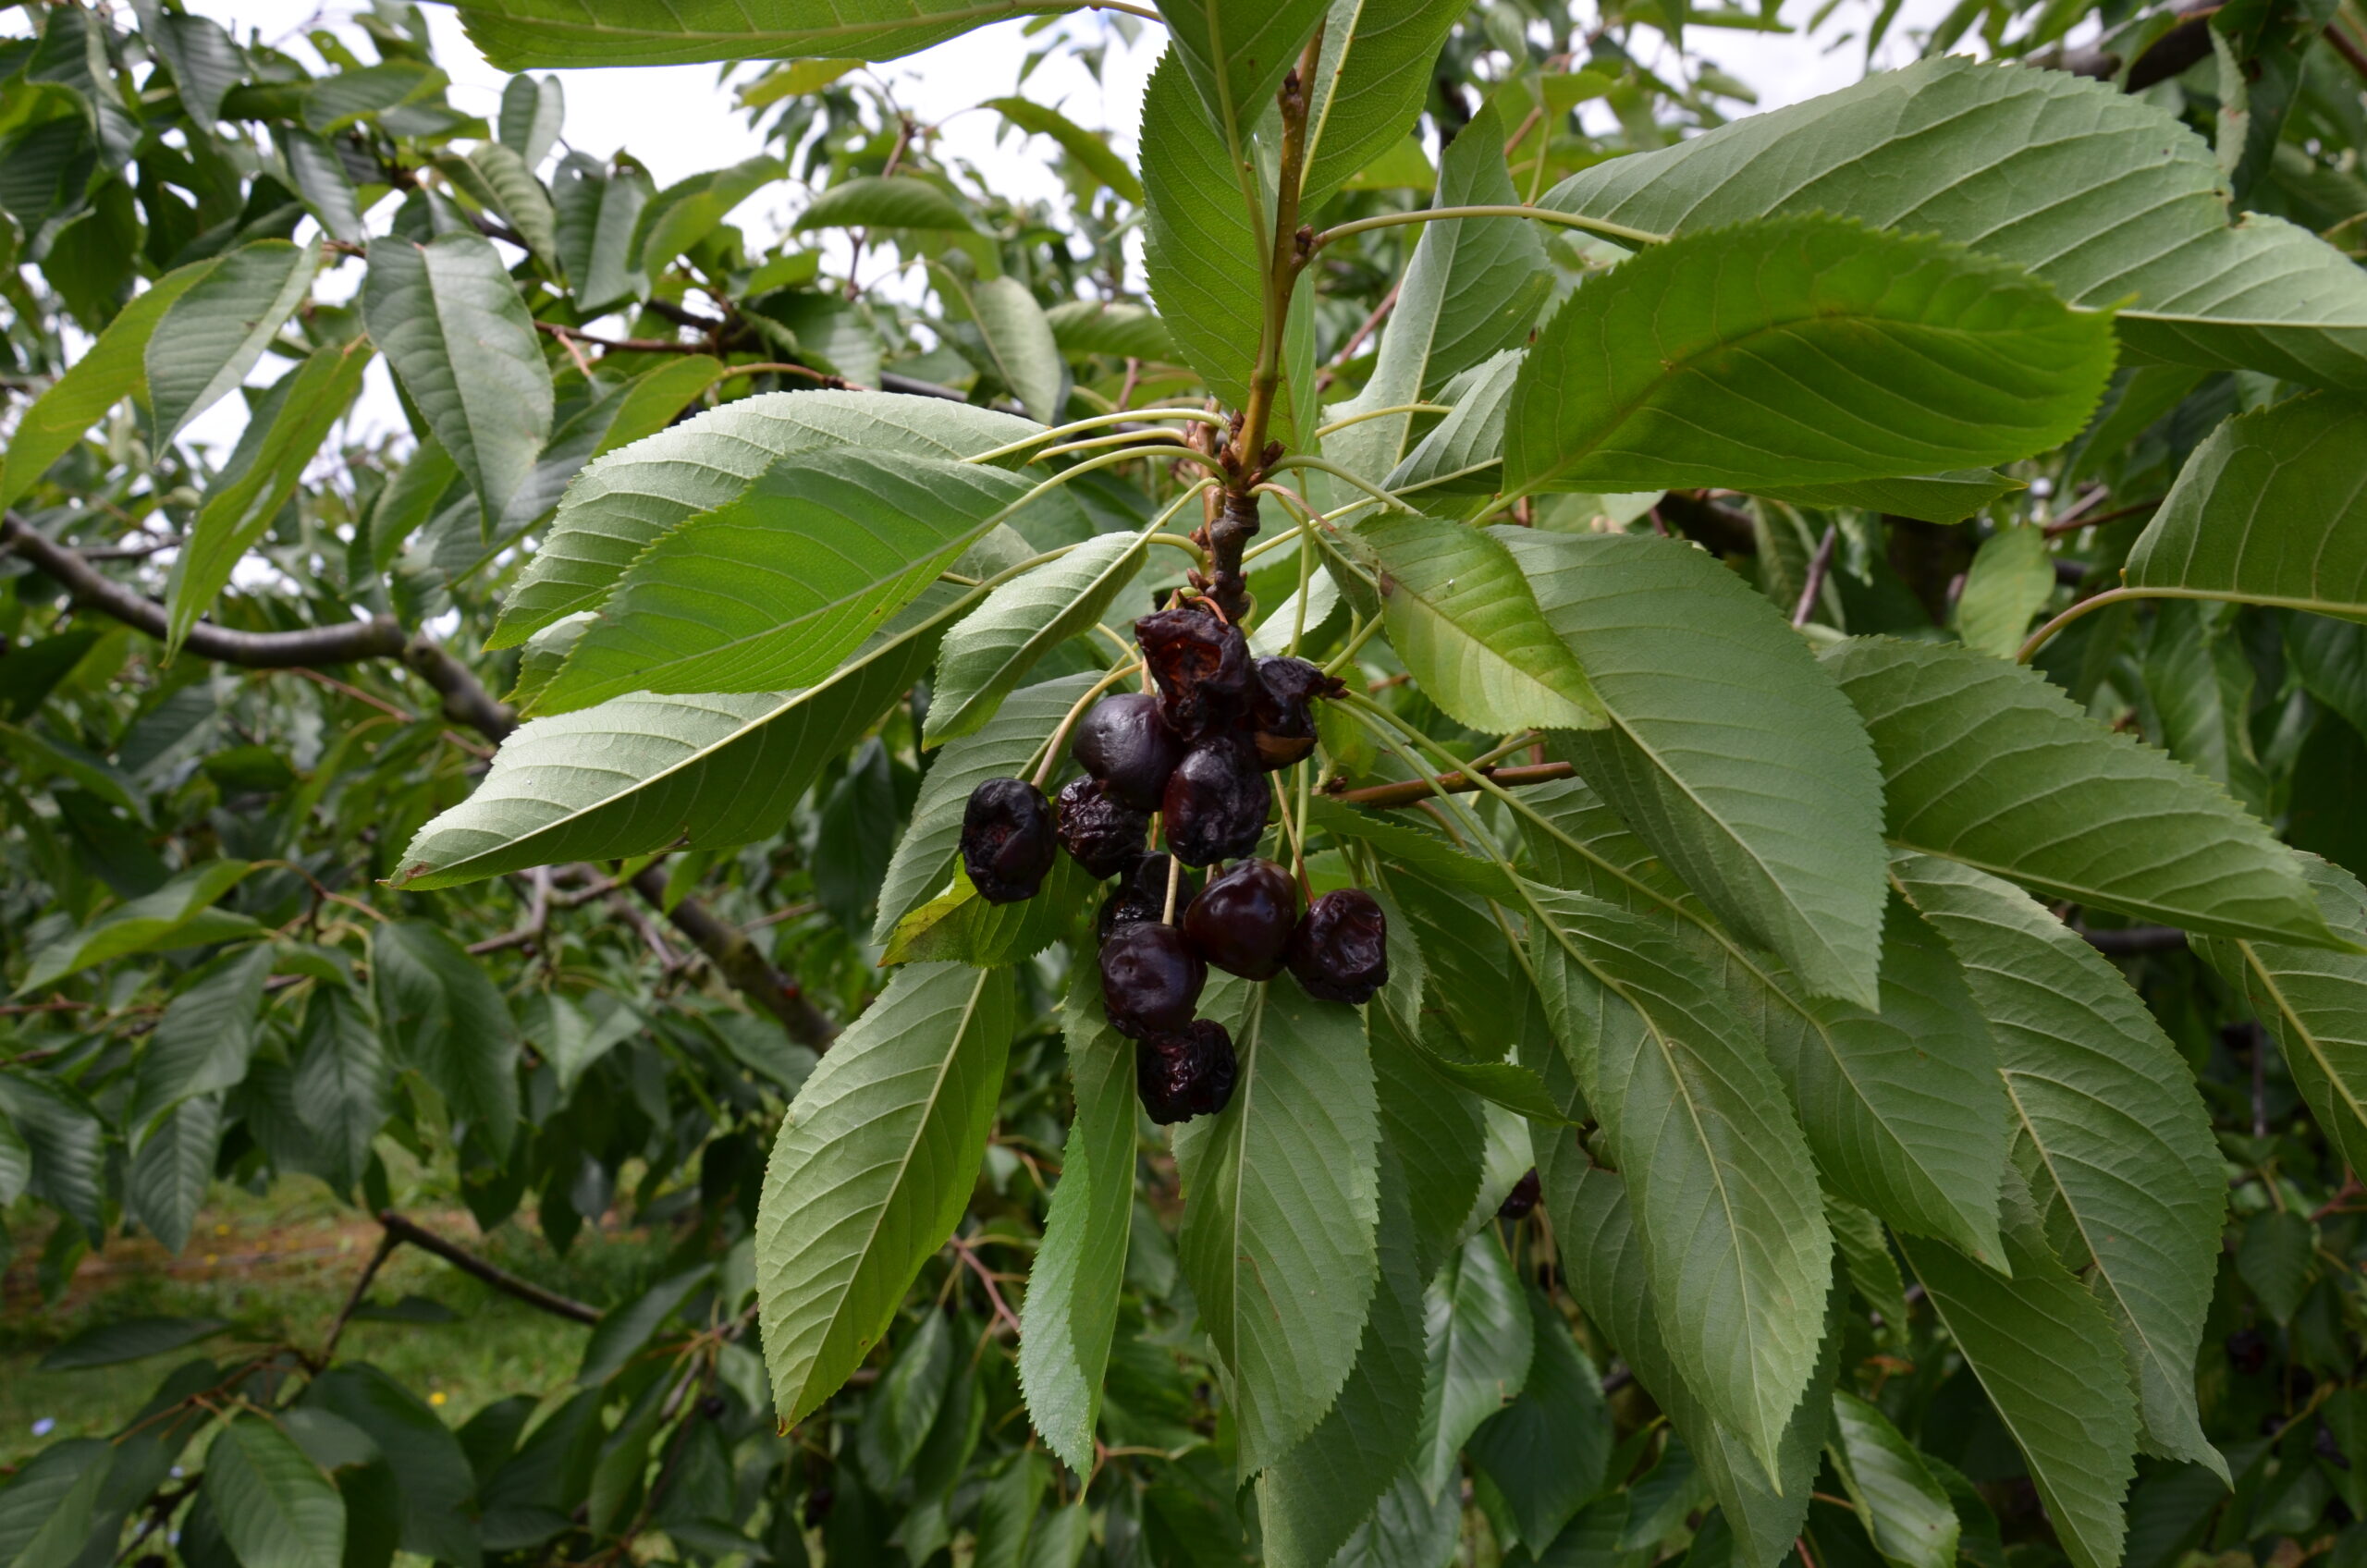 Fot. 3. Owoce czereśni uszkodzone przez D. suzukii (Fot. W. Piotrowski)